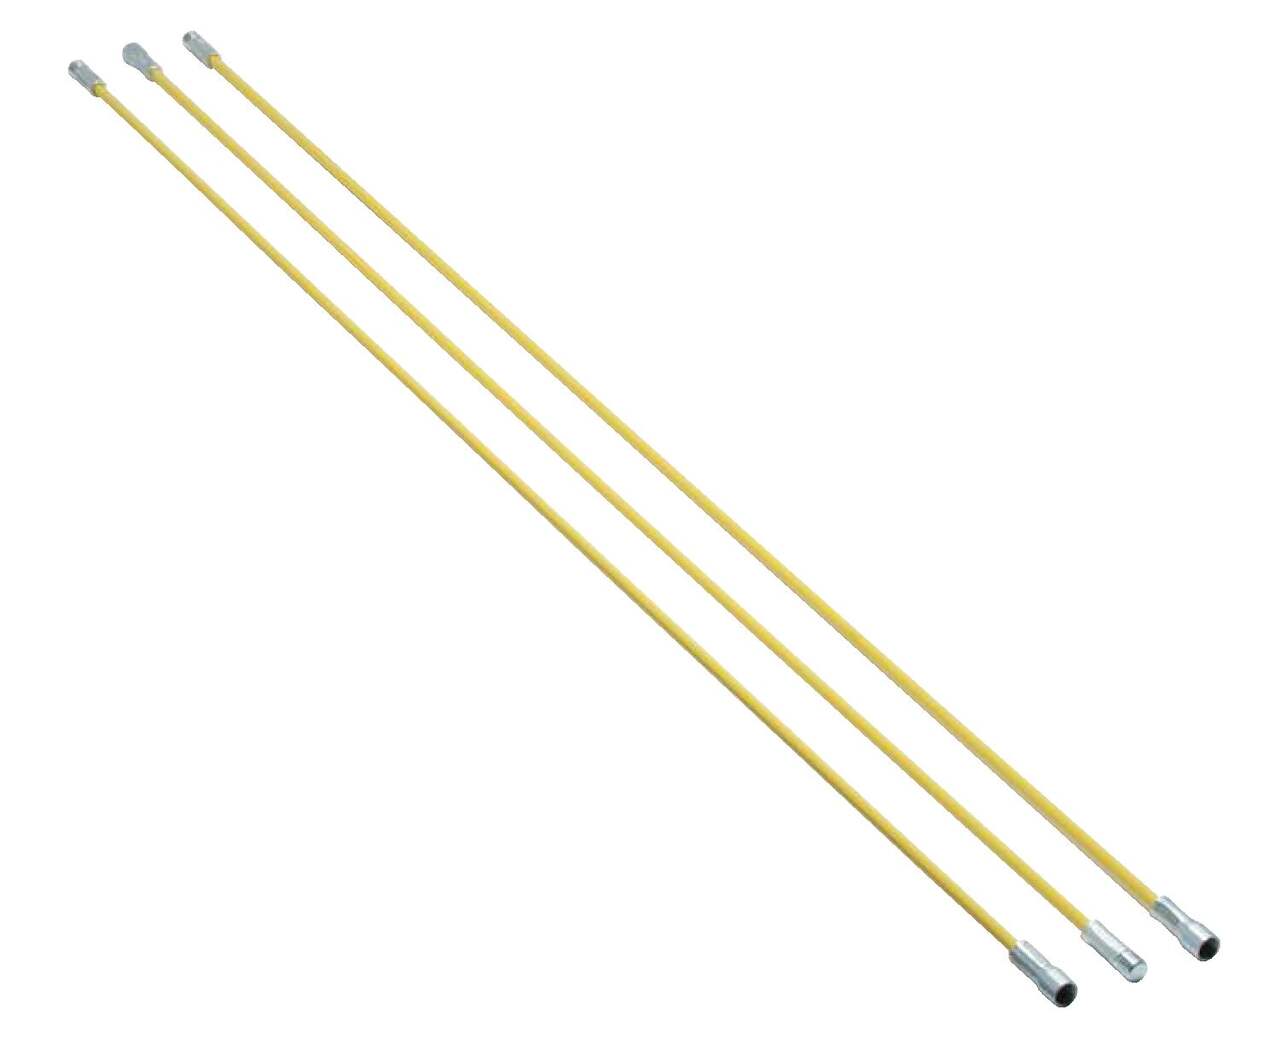 Imperial Flexible Fiberglass Chimney Brush Rod, 1.5-m, 3-pk